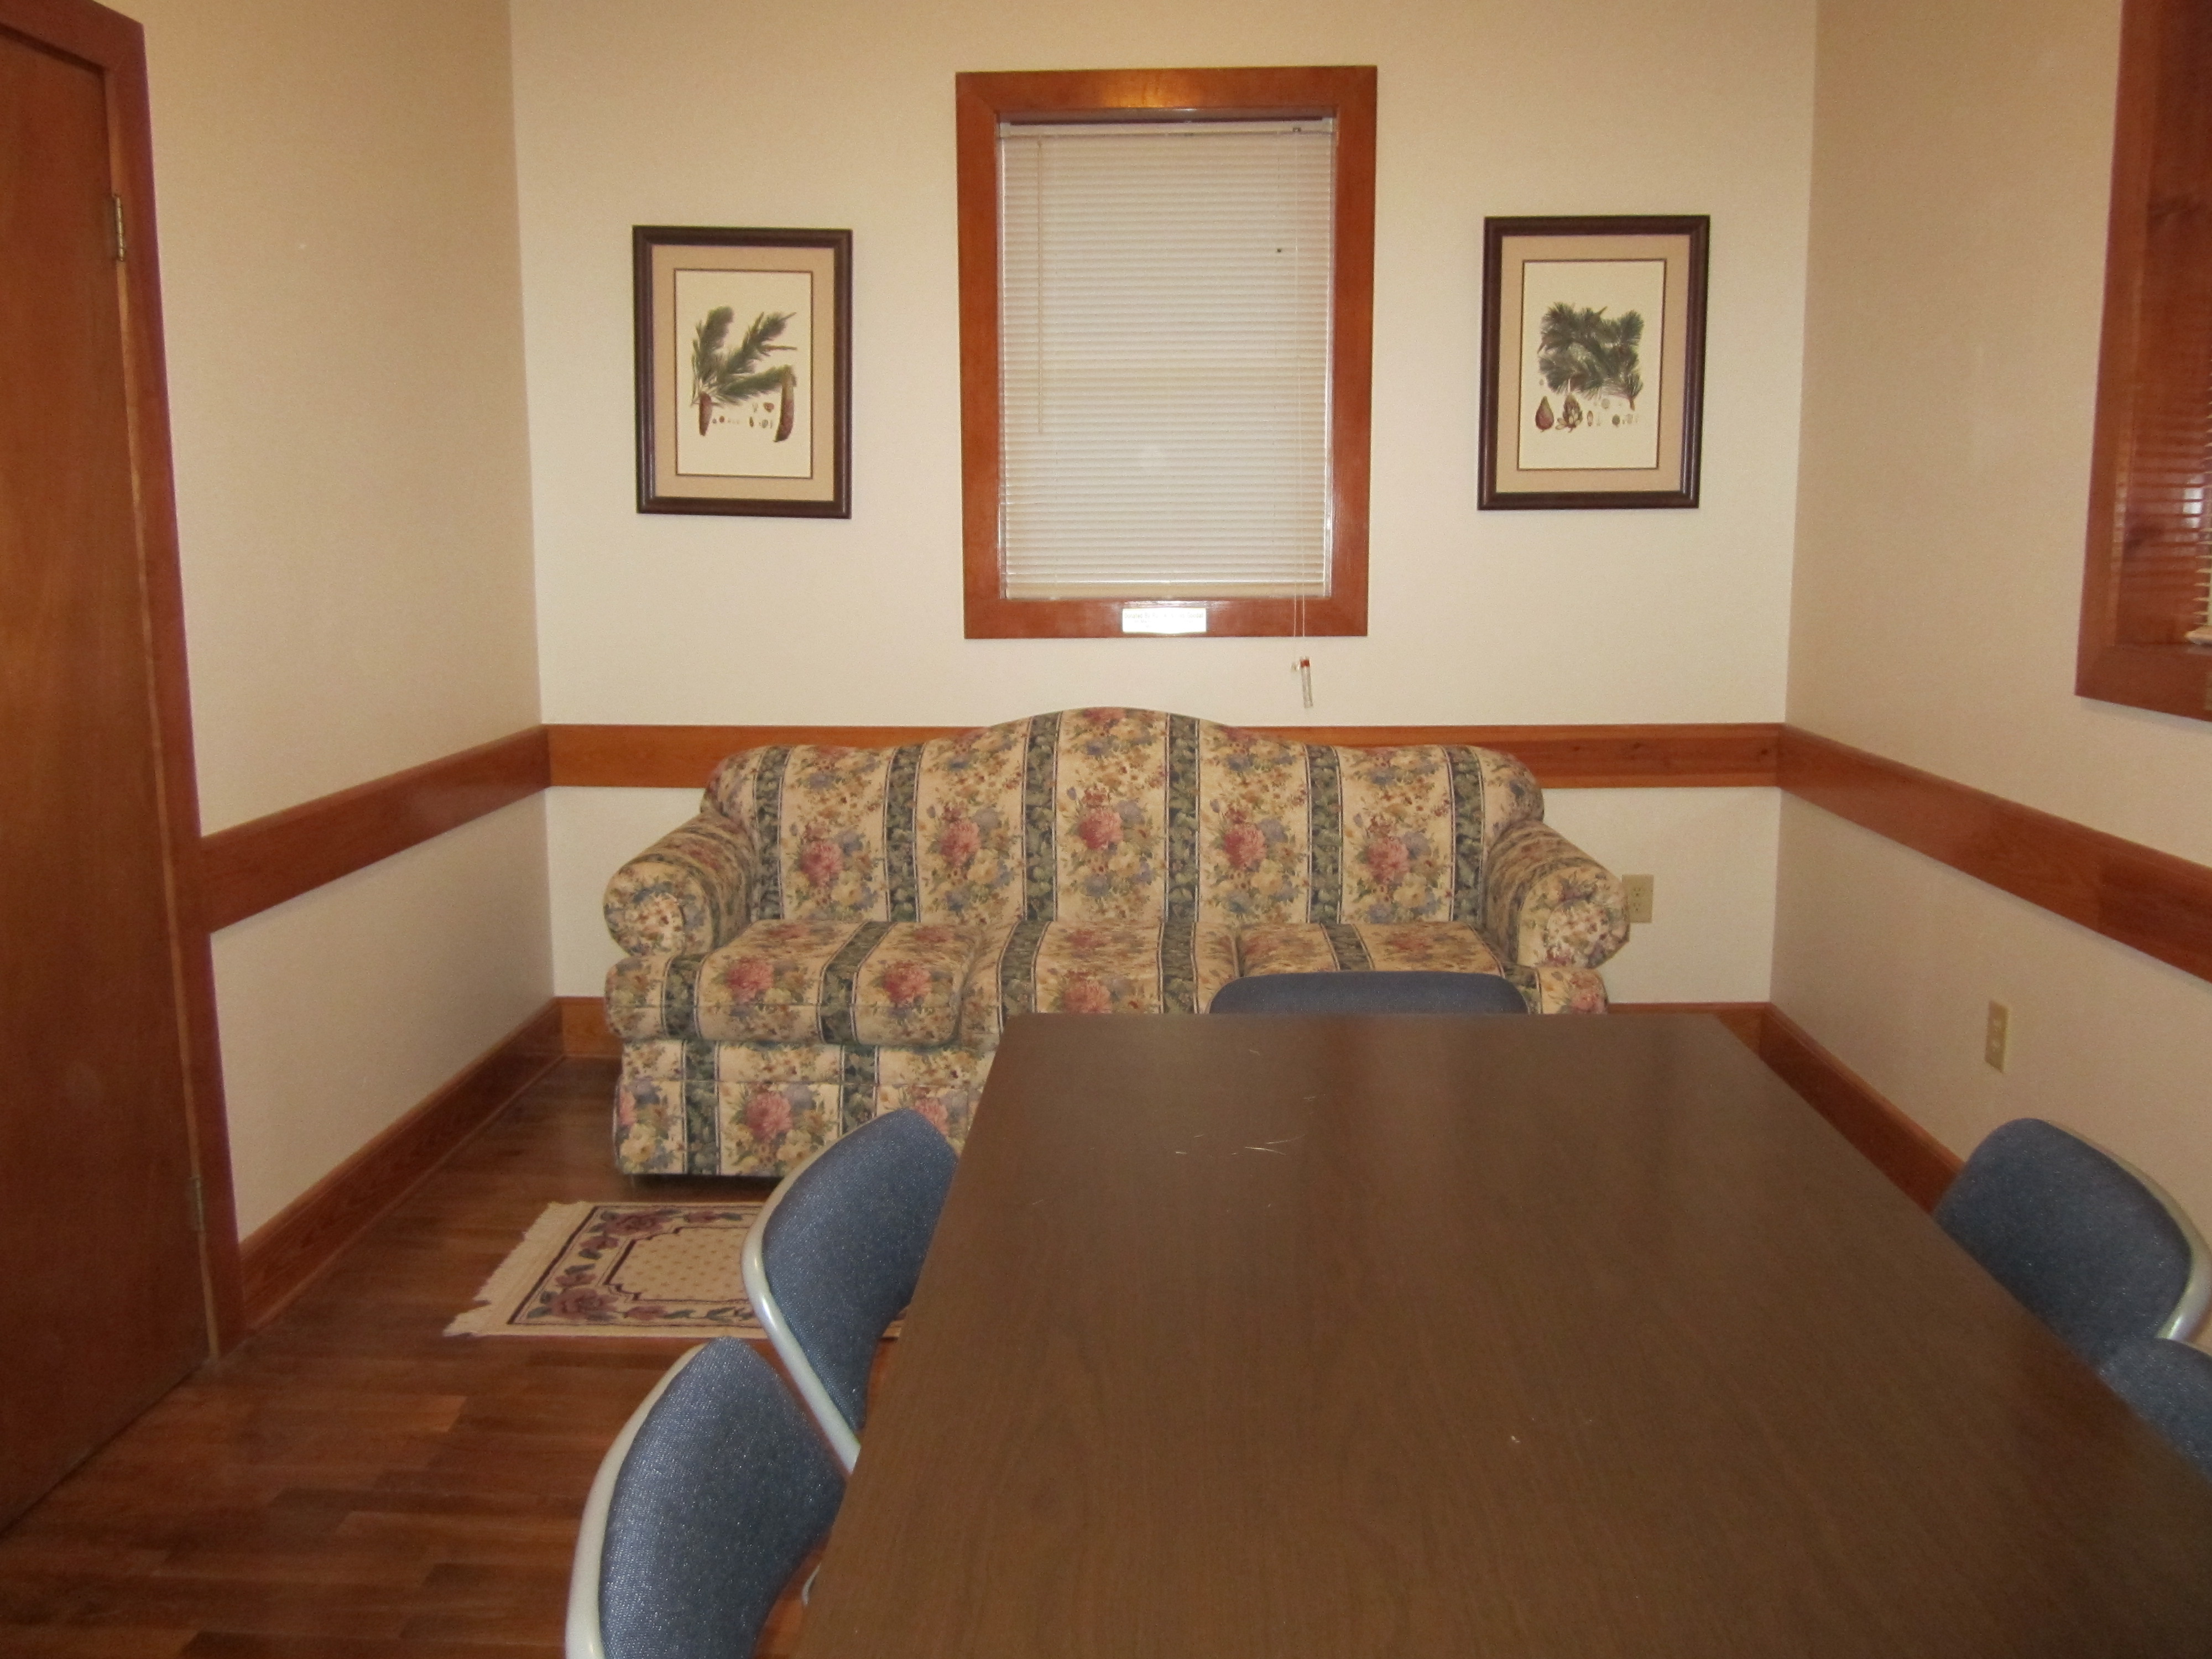 Meeting Room - 2nd floor